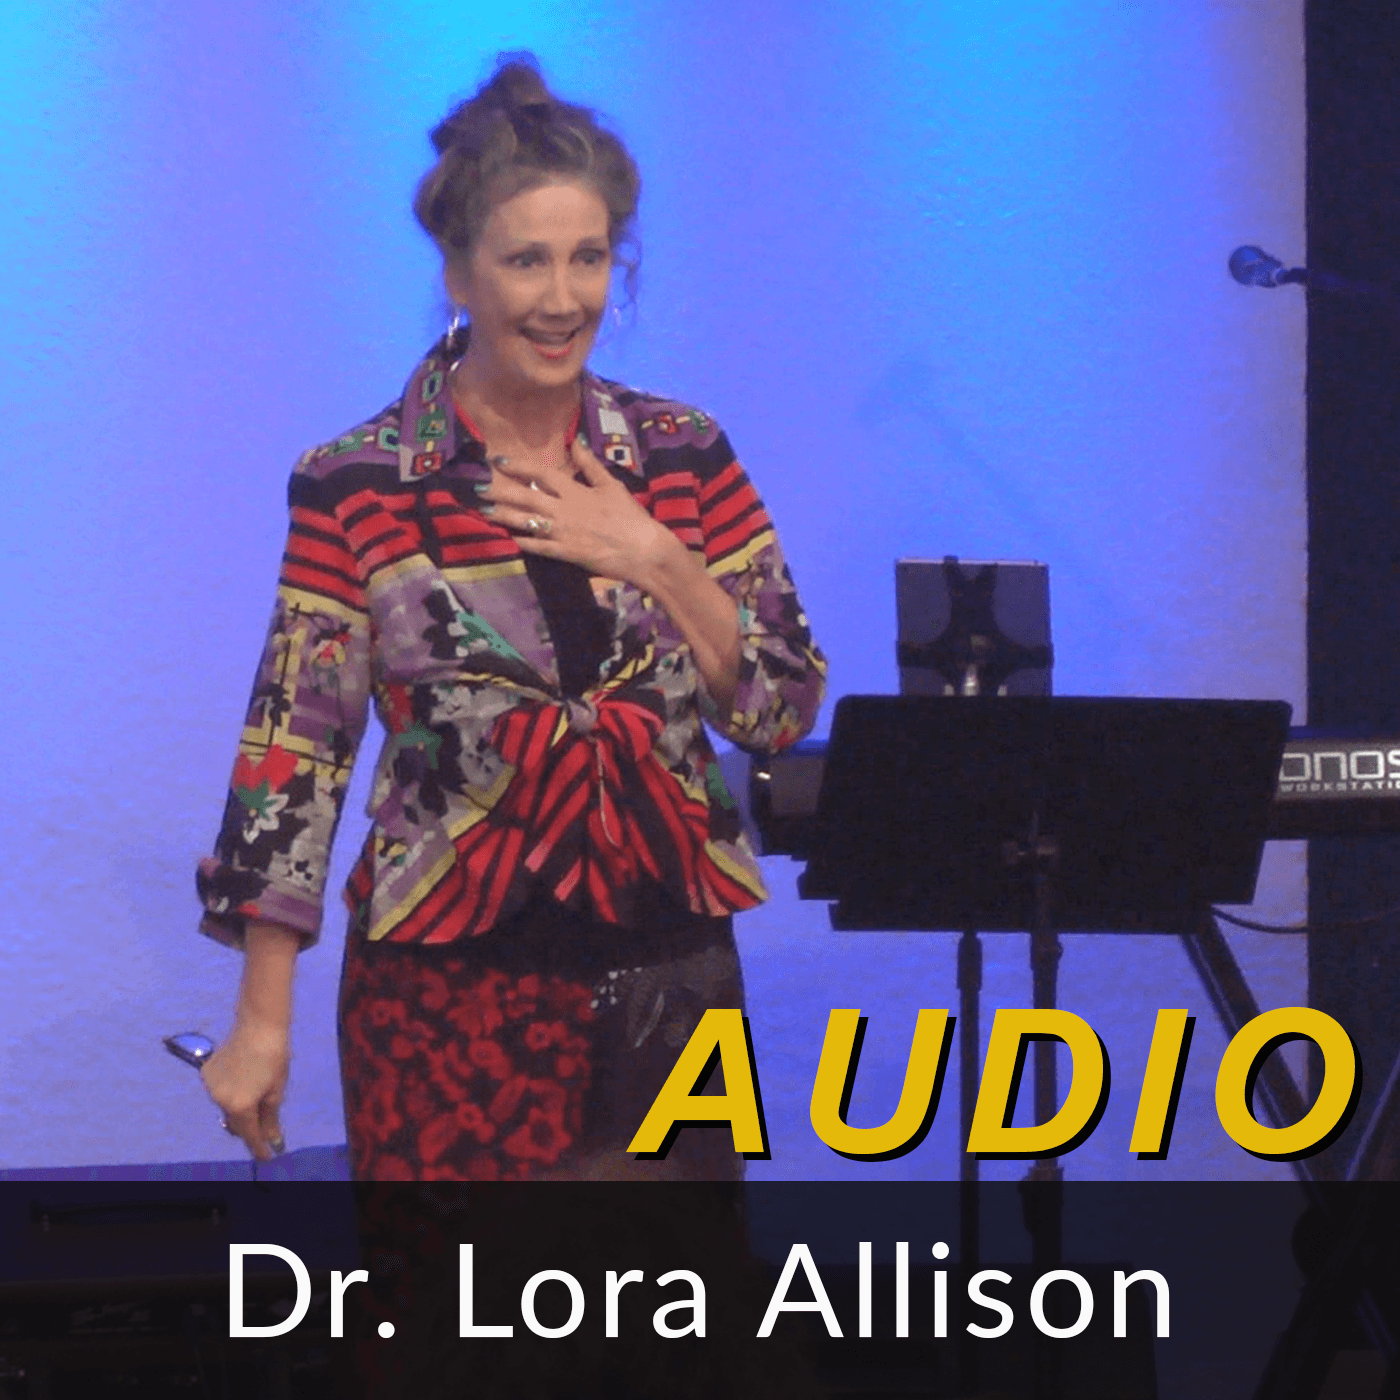 Dr. Lora Allison